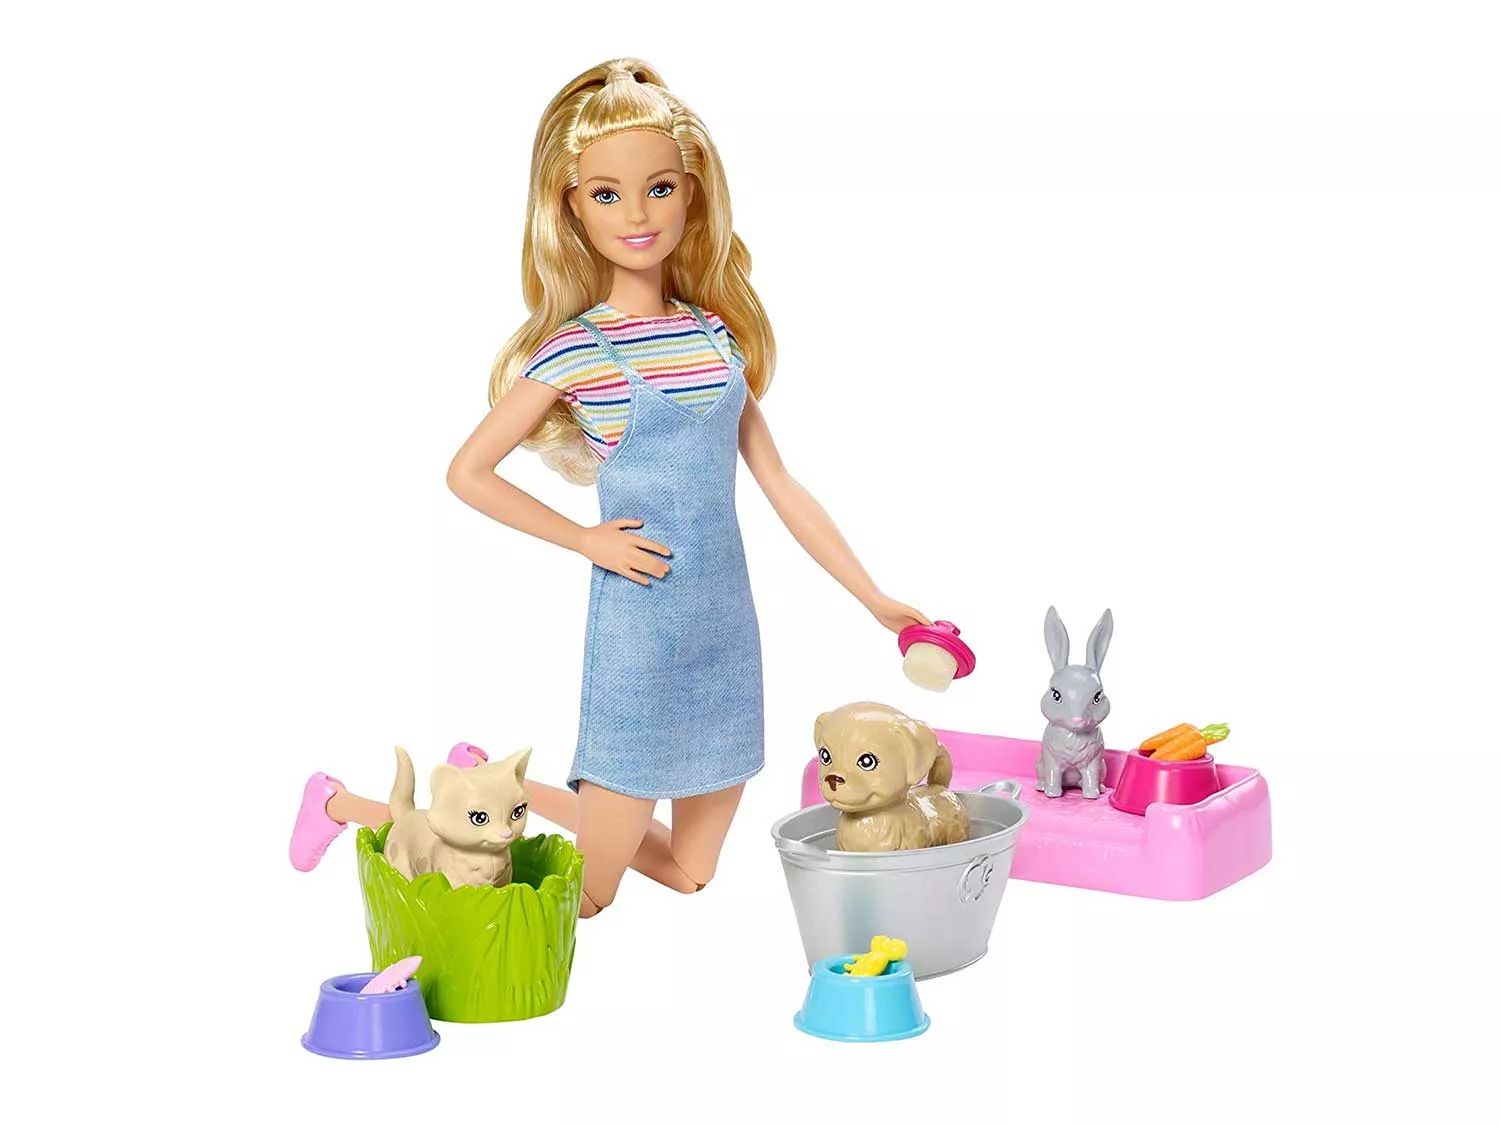 Barbie Play ’N’ Wash Pets Doll & Playset